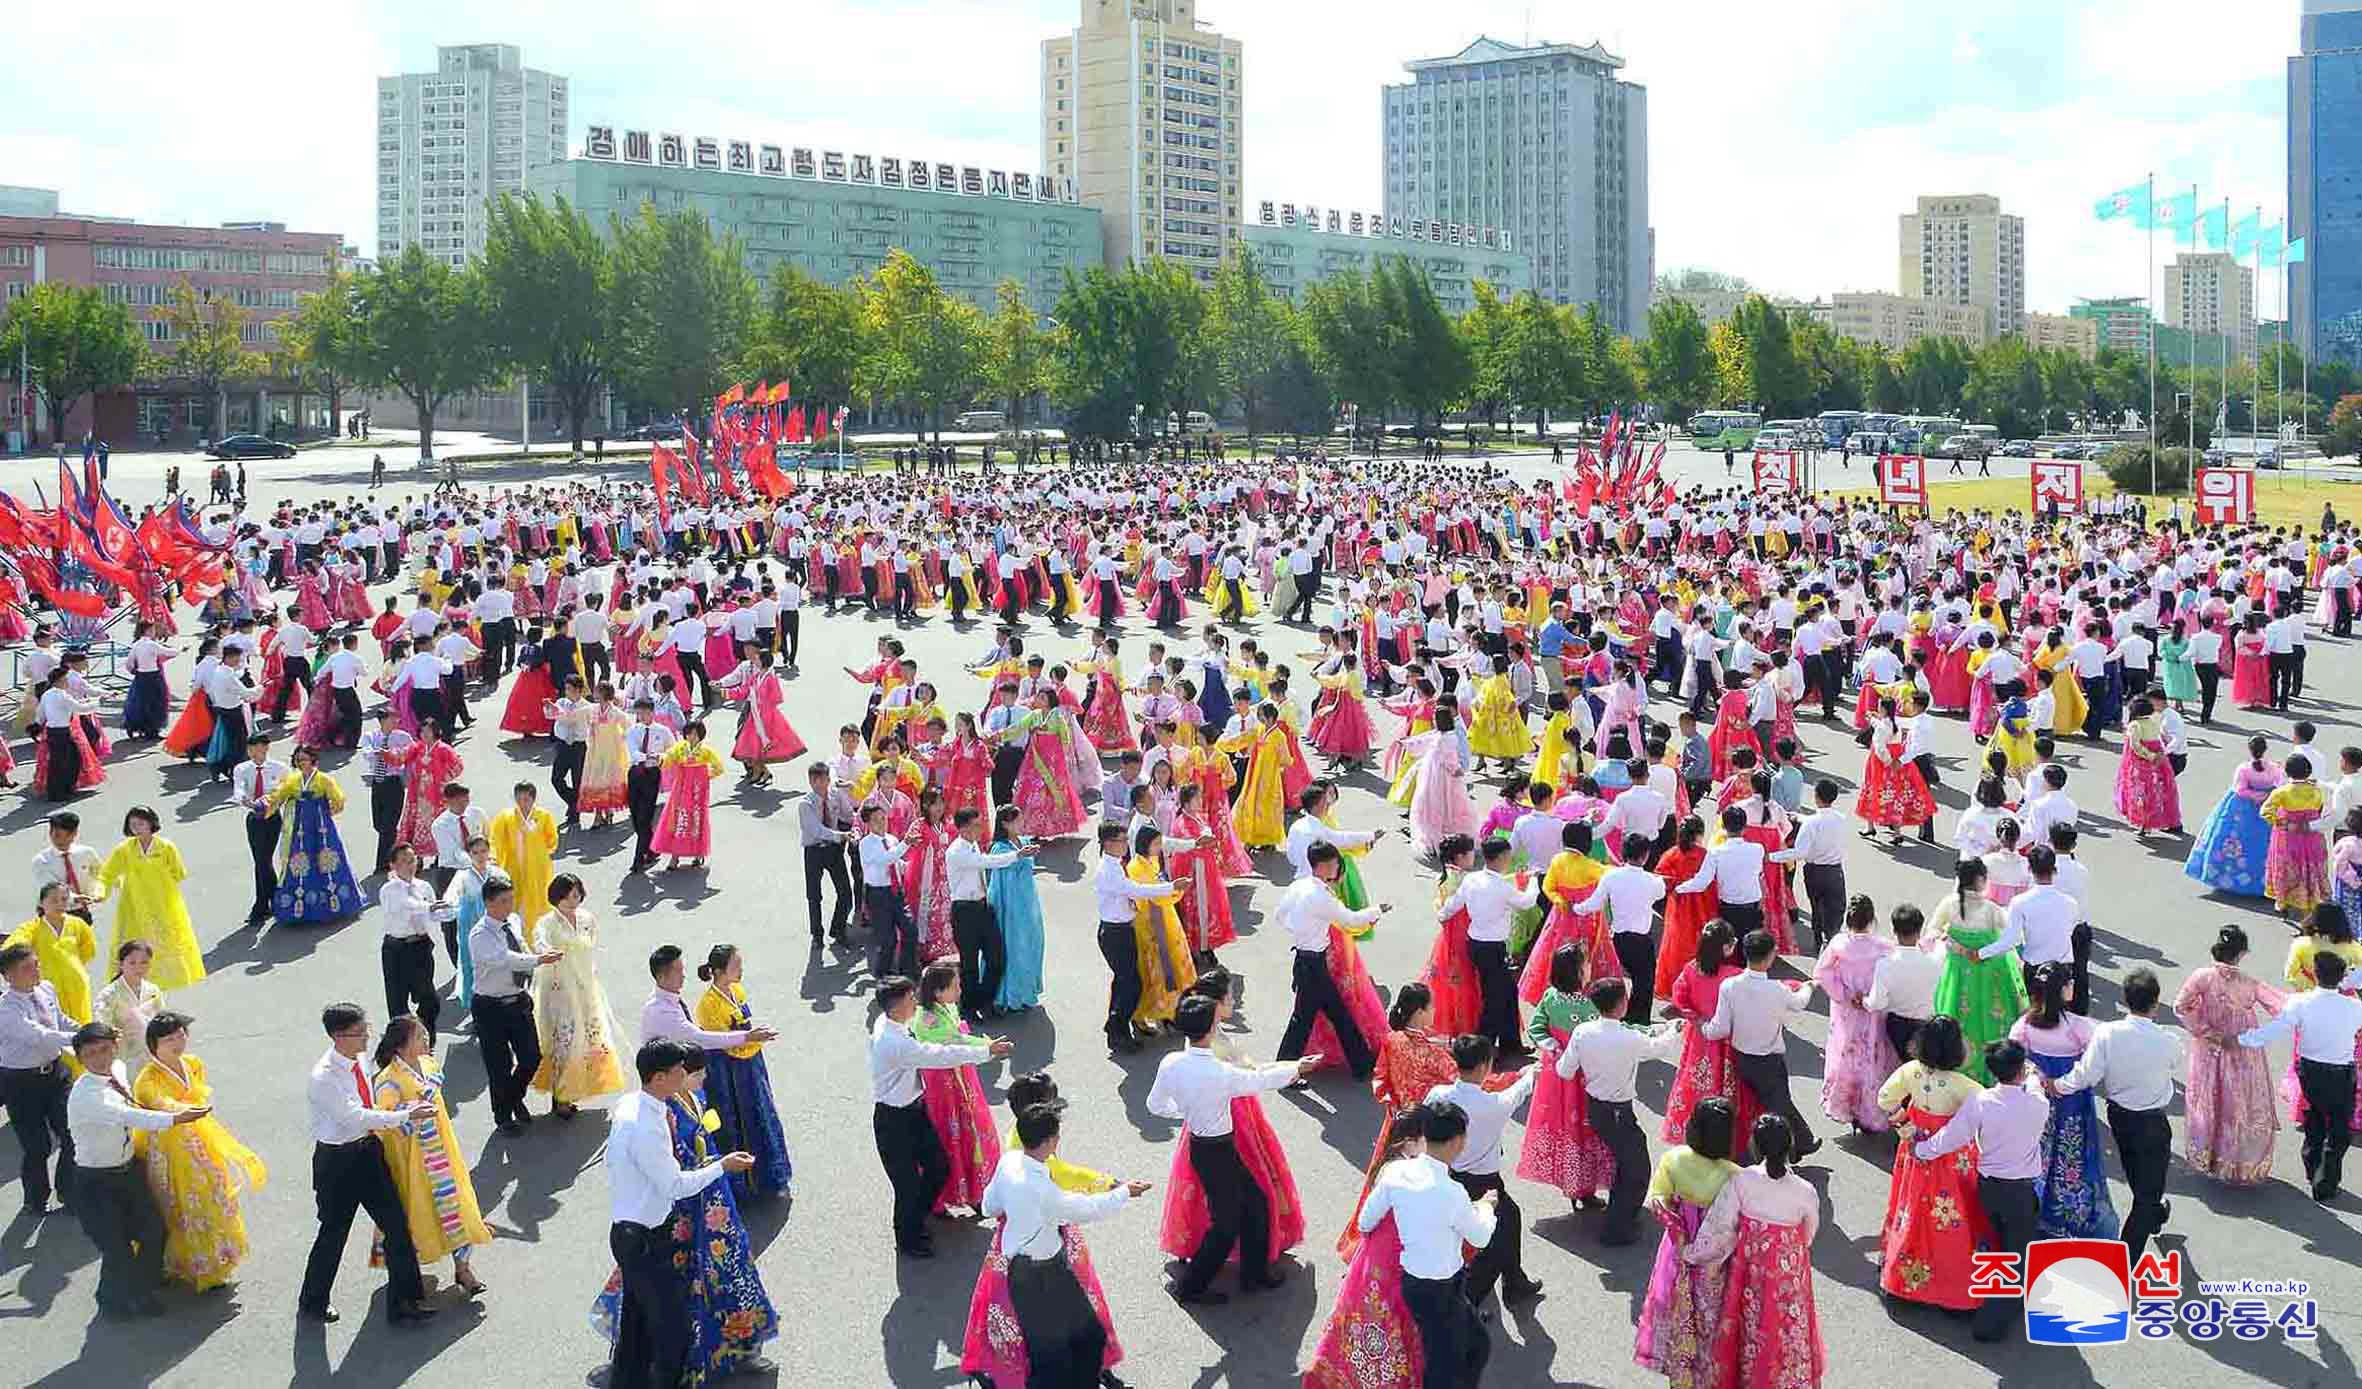 الرقص والألوان شعار مواطنى كوريا الشمالية فى الاحتفال بذكرى تأسيس الحزب الحاكم